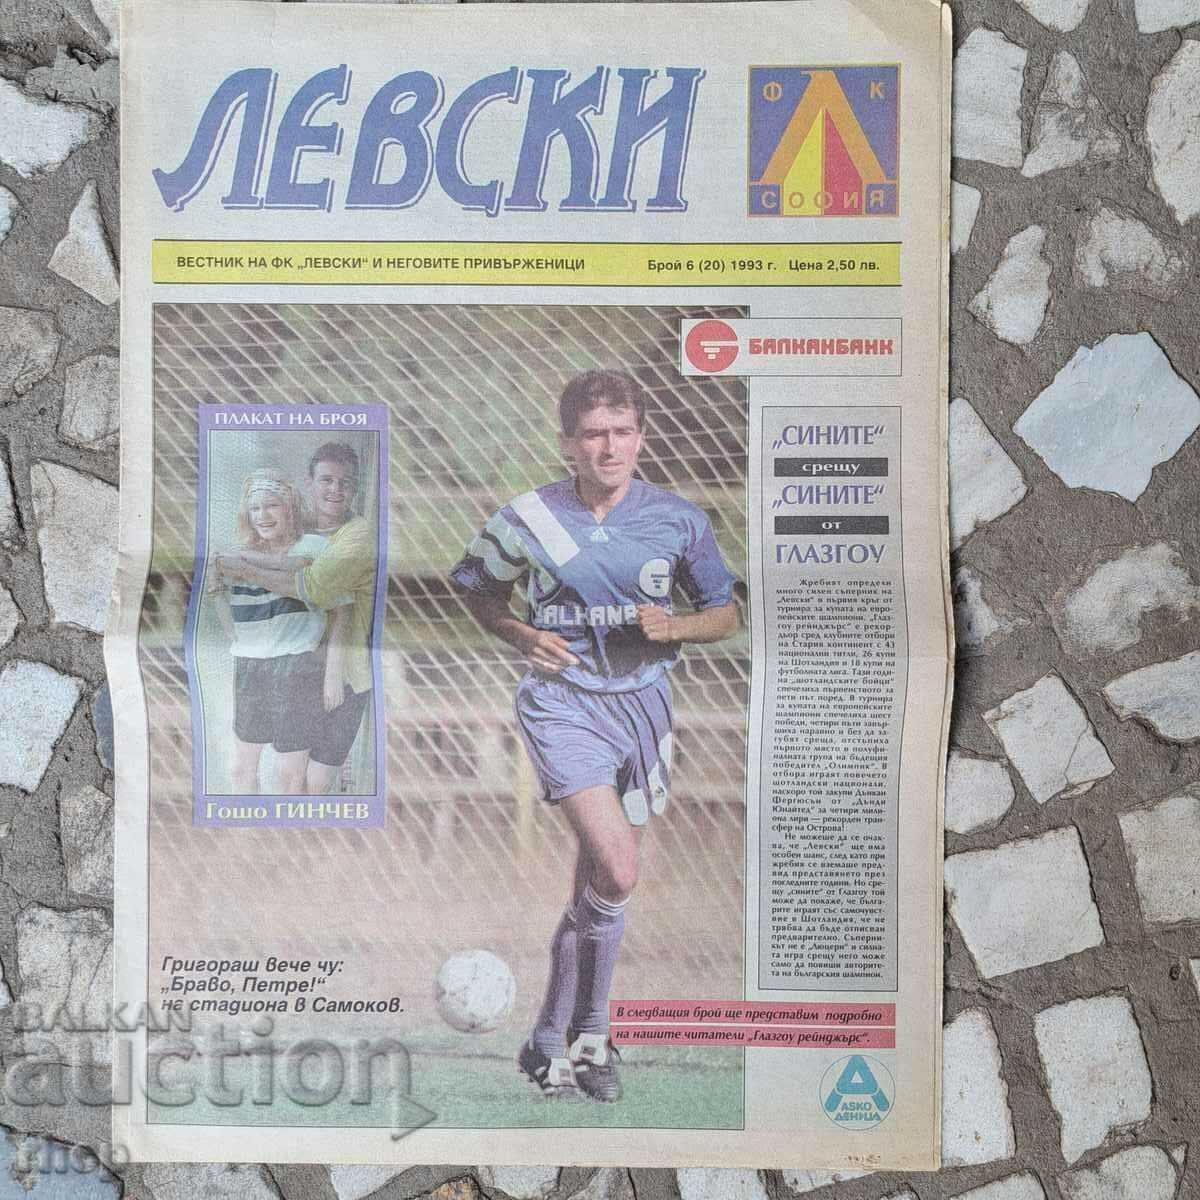 «Λέφσκι» αρ. 6 (20) 1993. Εφημερίδα ποδόσφαιρο